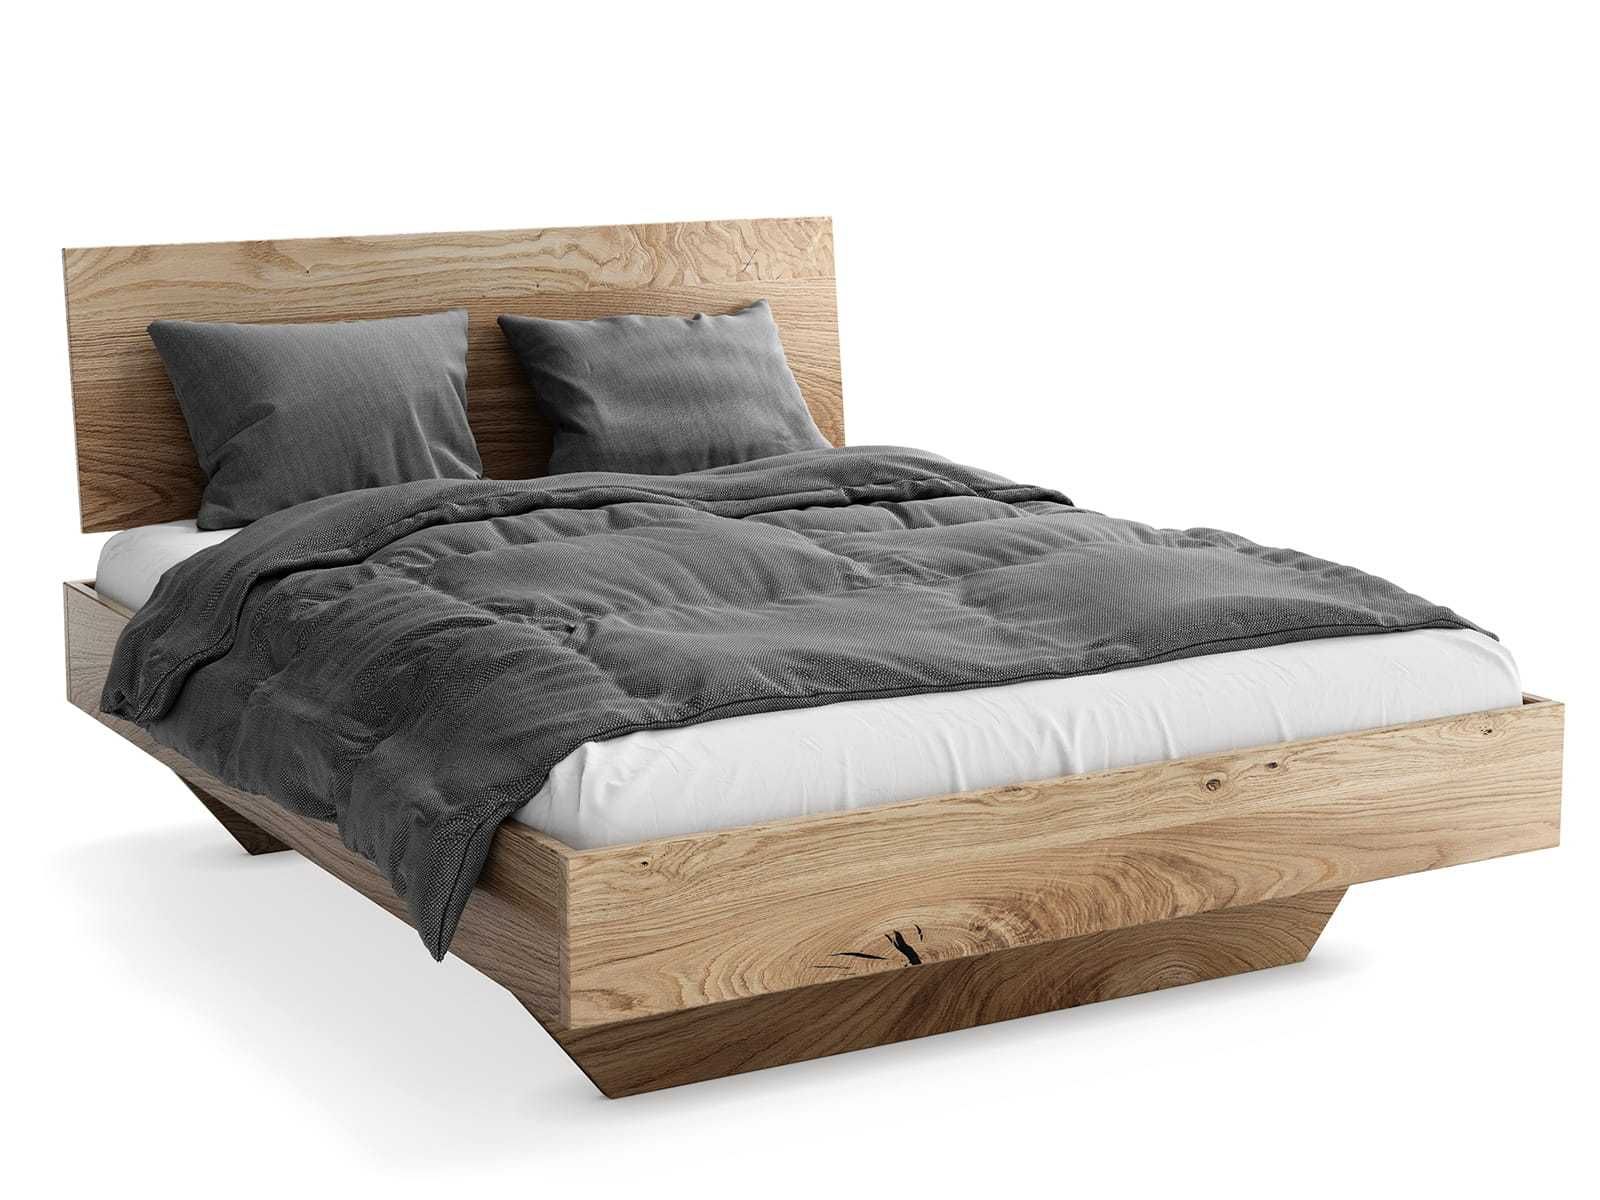 Łóżko drewniane Dębowe 140x200cm Lewitujące Piacenza, różne wymiary